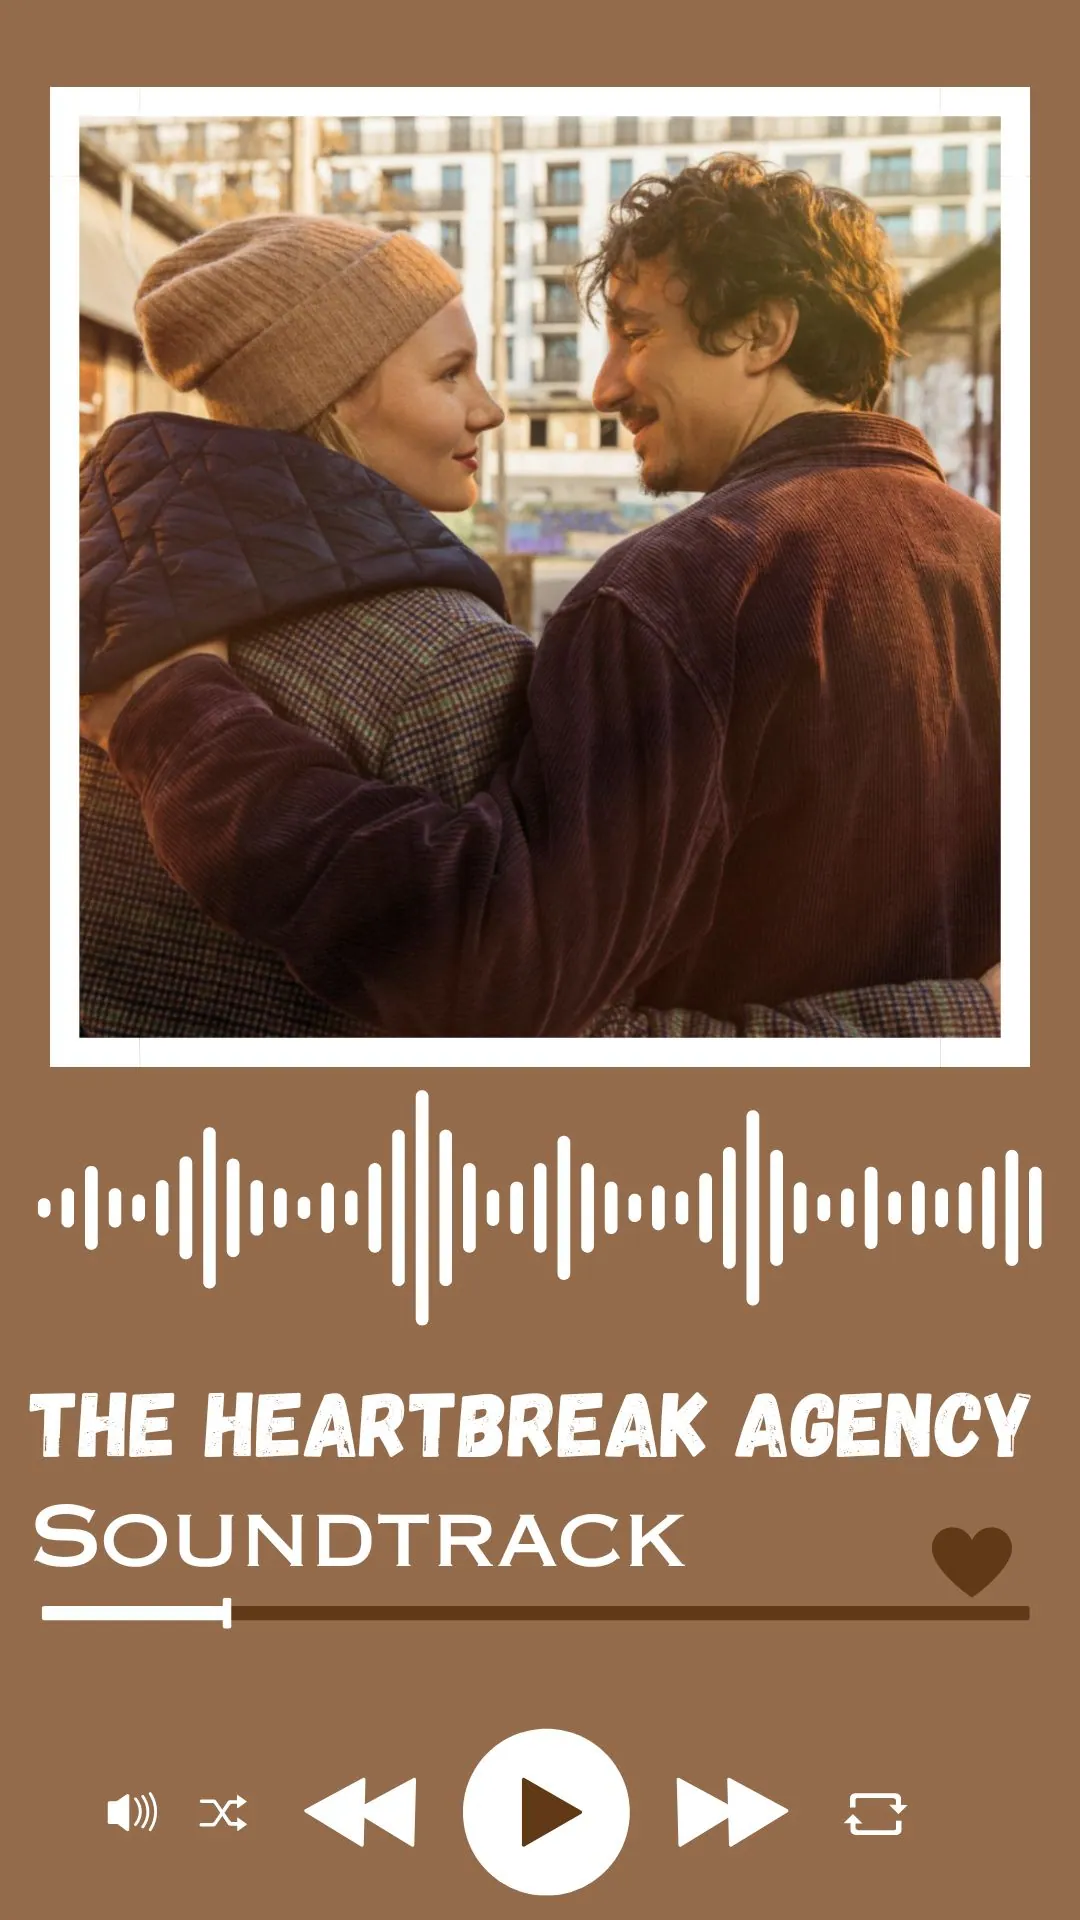 The Heartbreak Agency Soundtrack